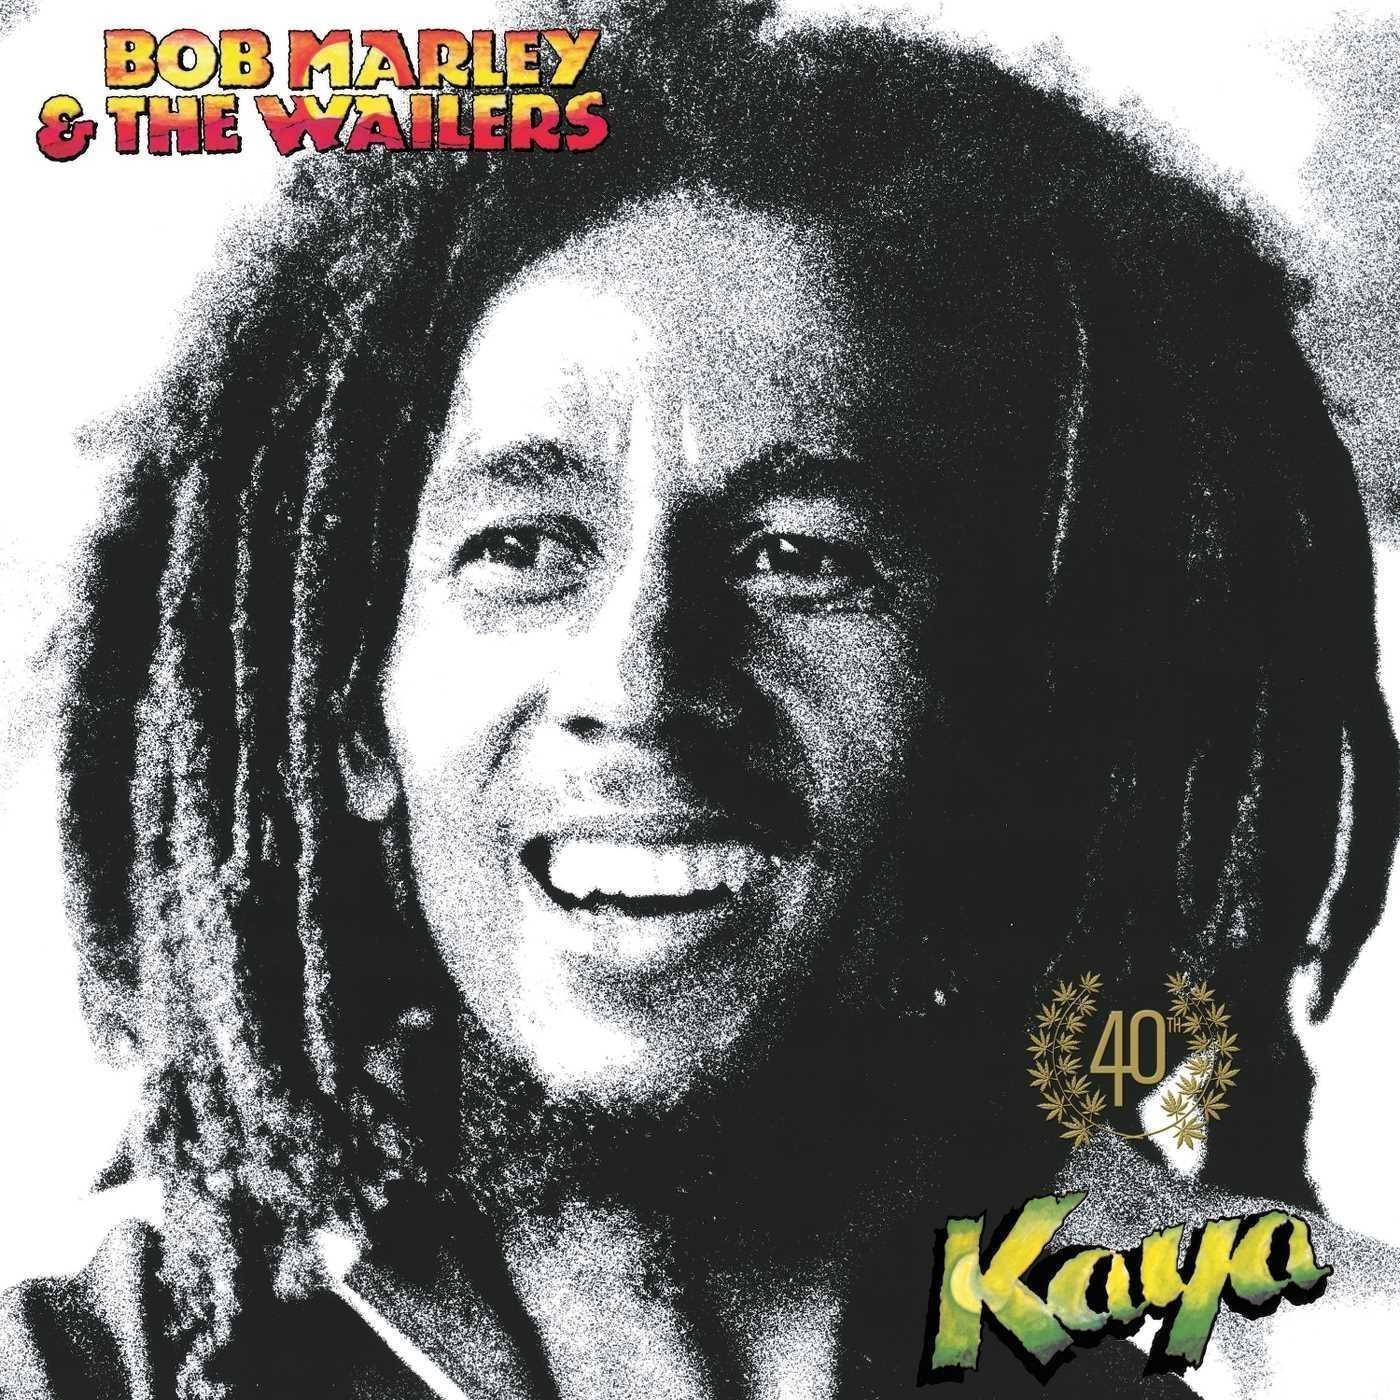 Vinyl Record Bob Marley & The Wailers - Kaya 40 (2 LP)